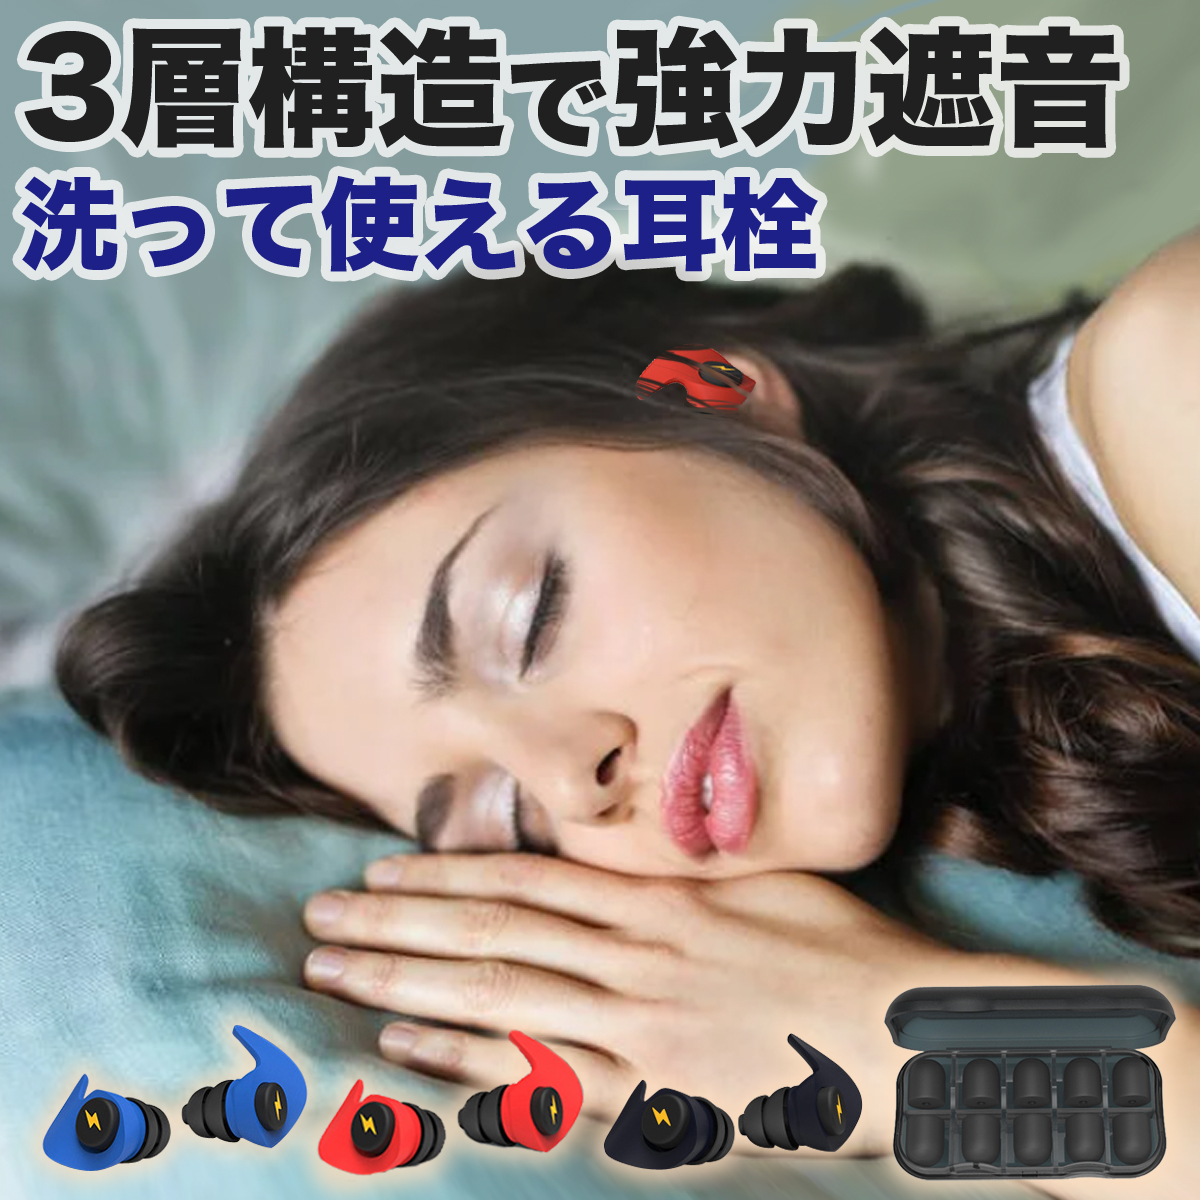 新しい 耳栓 シリコン 遮音 睡眠 勉強 いびき 快眠 集中 騒音 ブラック 黒139